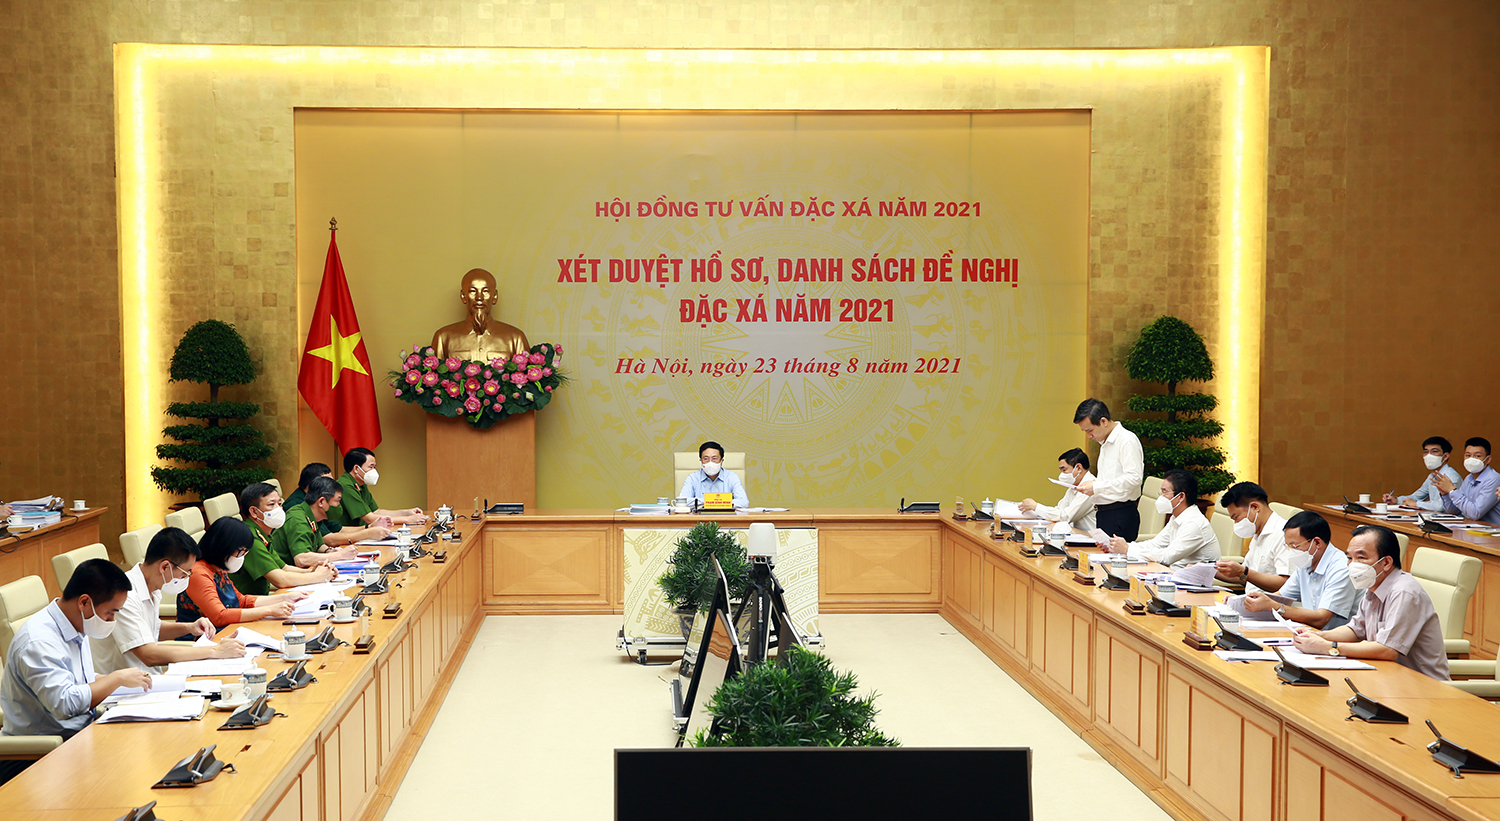 Phó Thủ tướng Phạm Bình Minh chủ trì cuộc họp xét duyệt hồ sơ đặc xá năm 2021 - Ảnh 2.